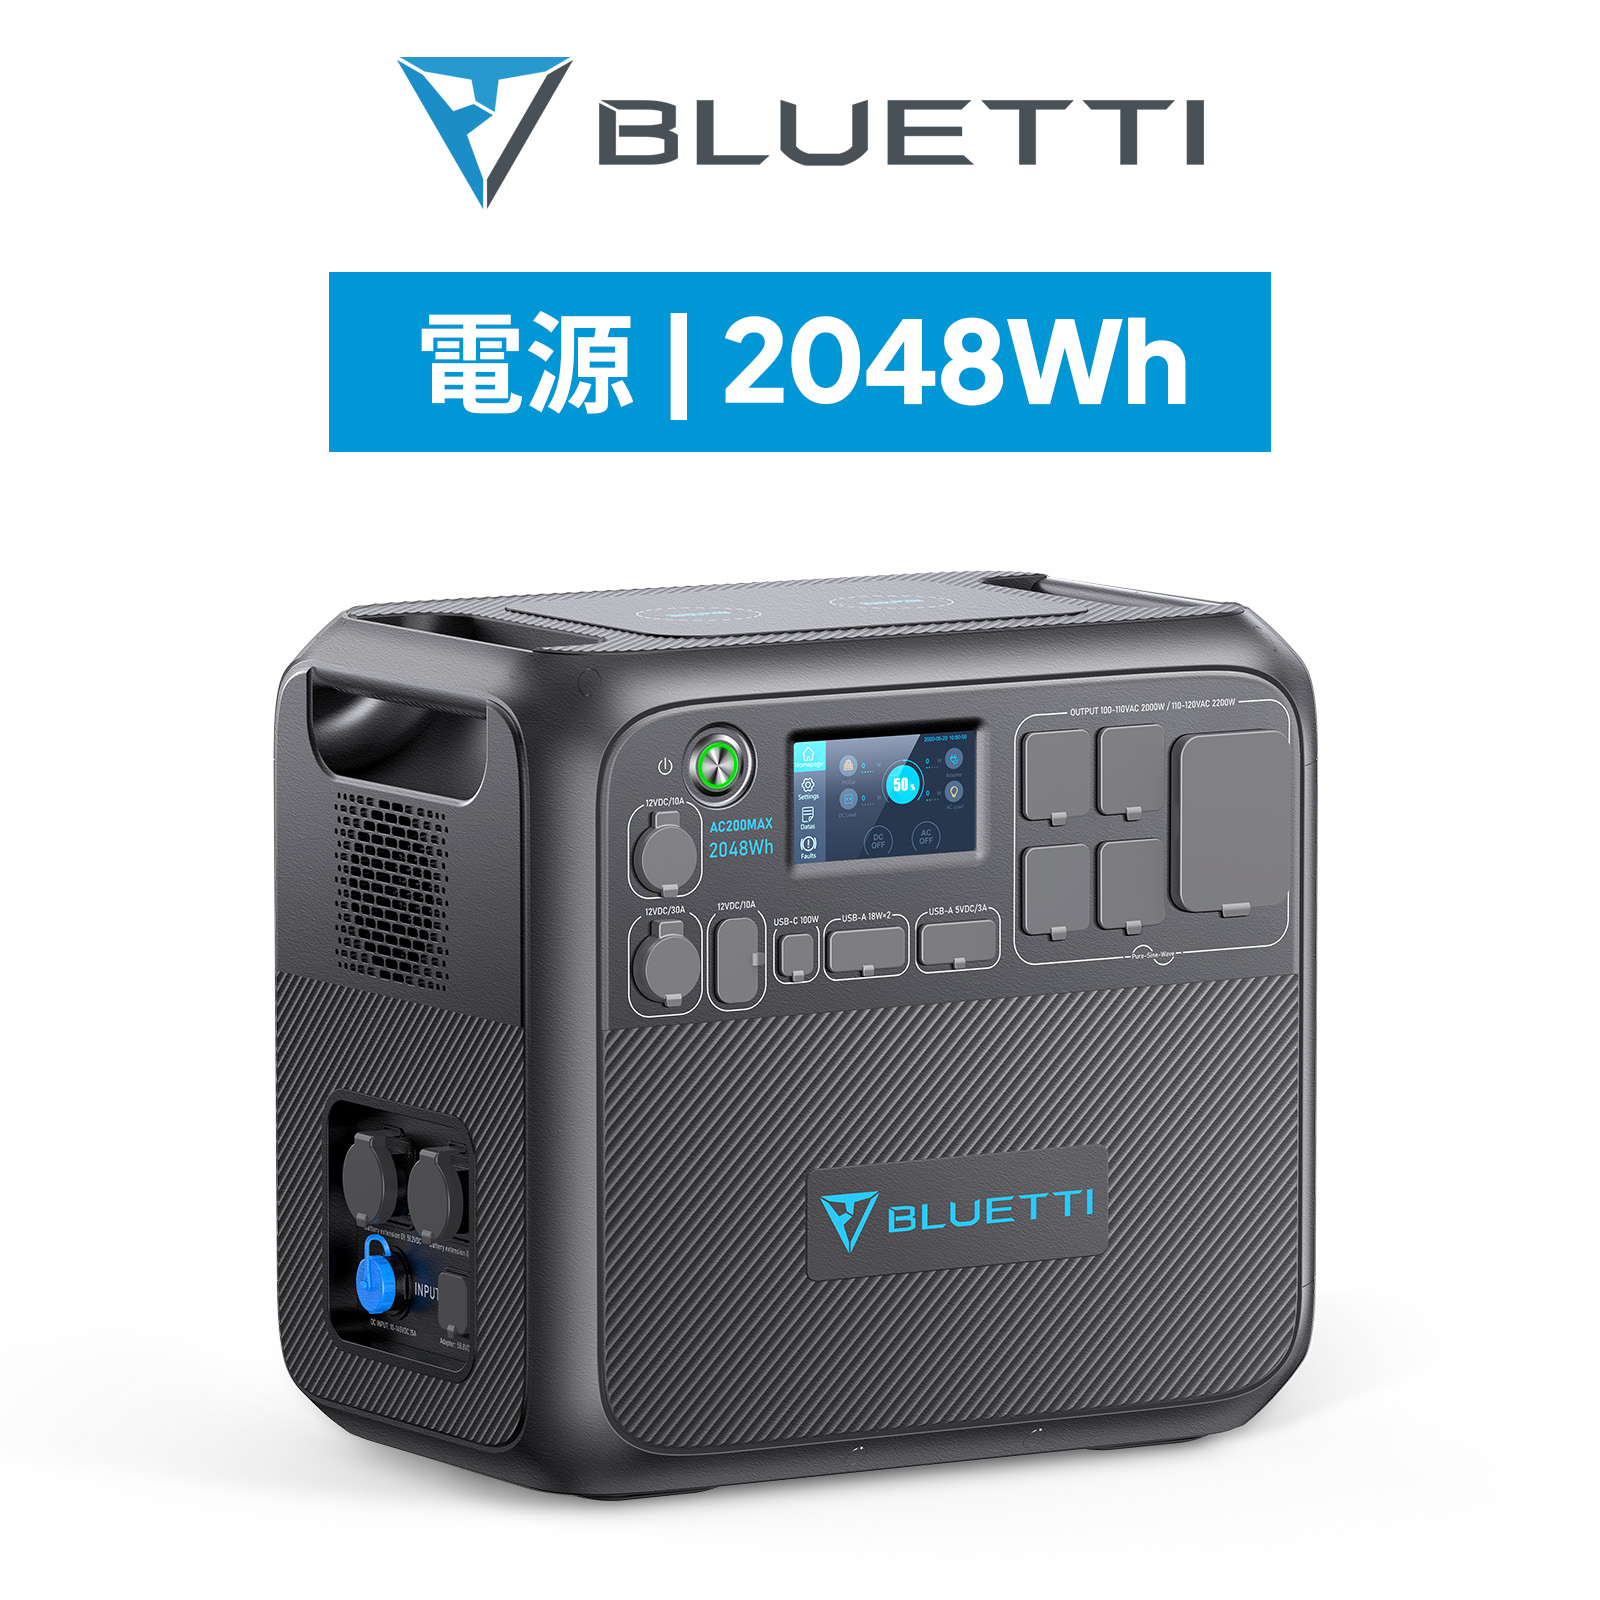 BLUETTI ポータブル電源 AC200MAX 2048Wh/2200W 大容量 蓄電池 家庭用 